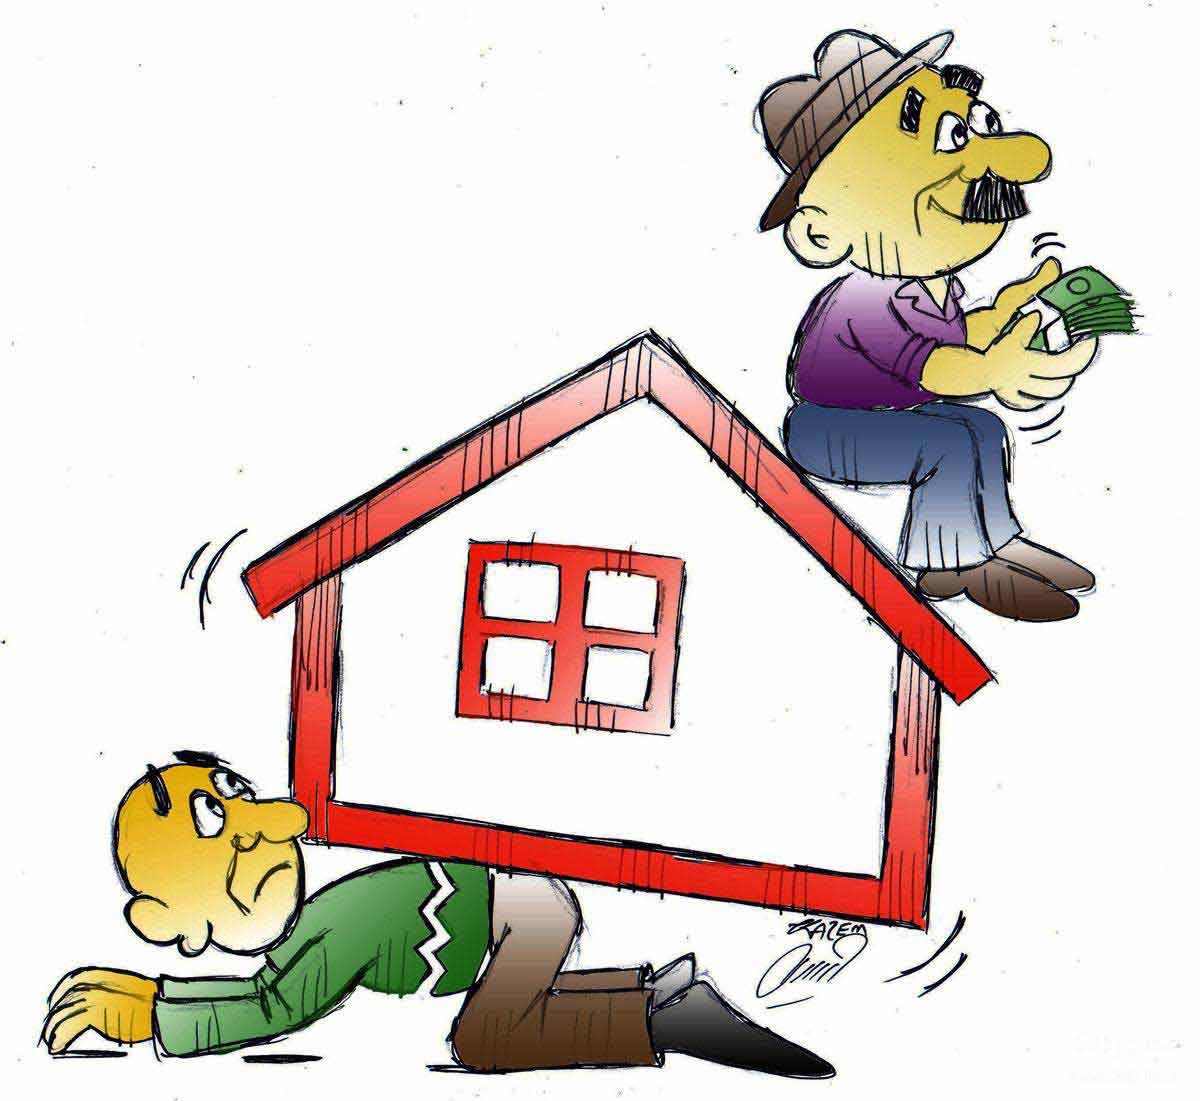 بار سنگین اجاره خانه بر دوش کم درآمدها